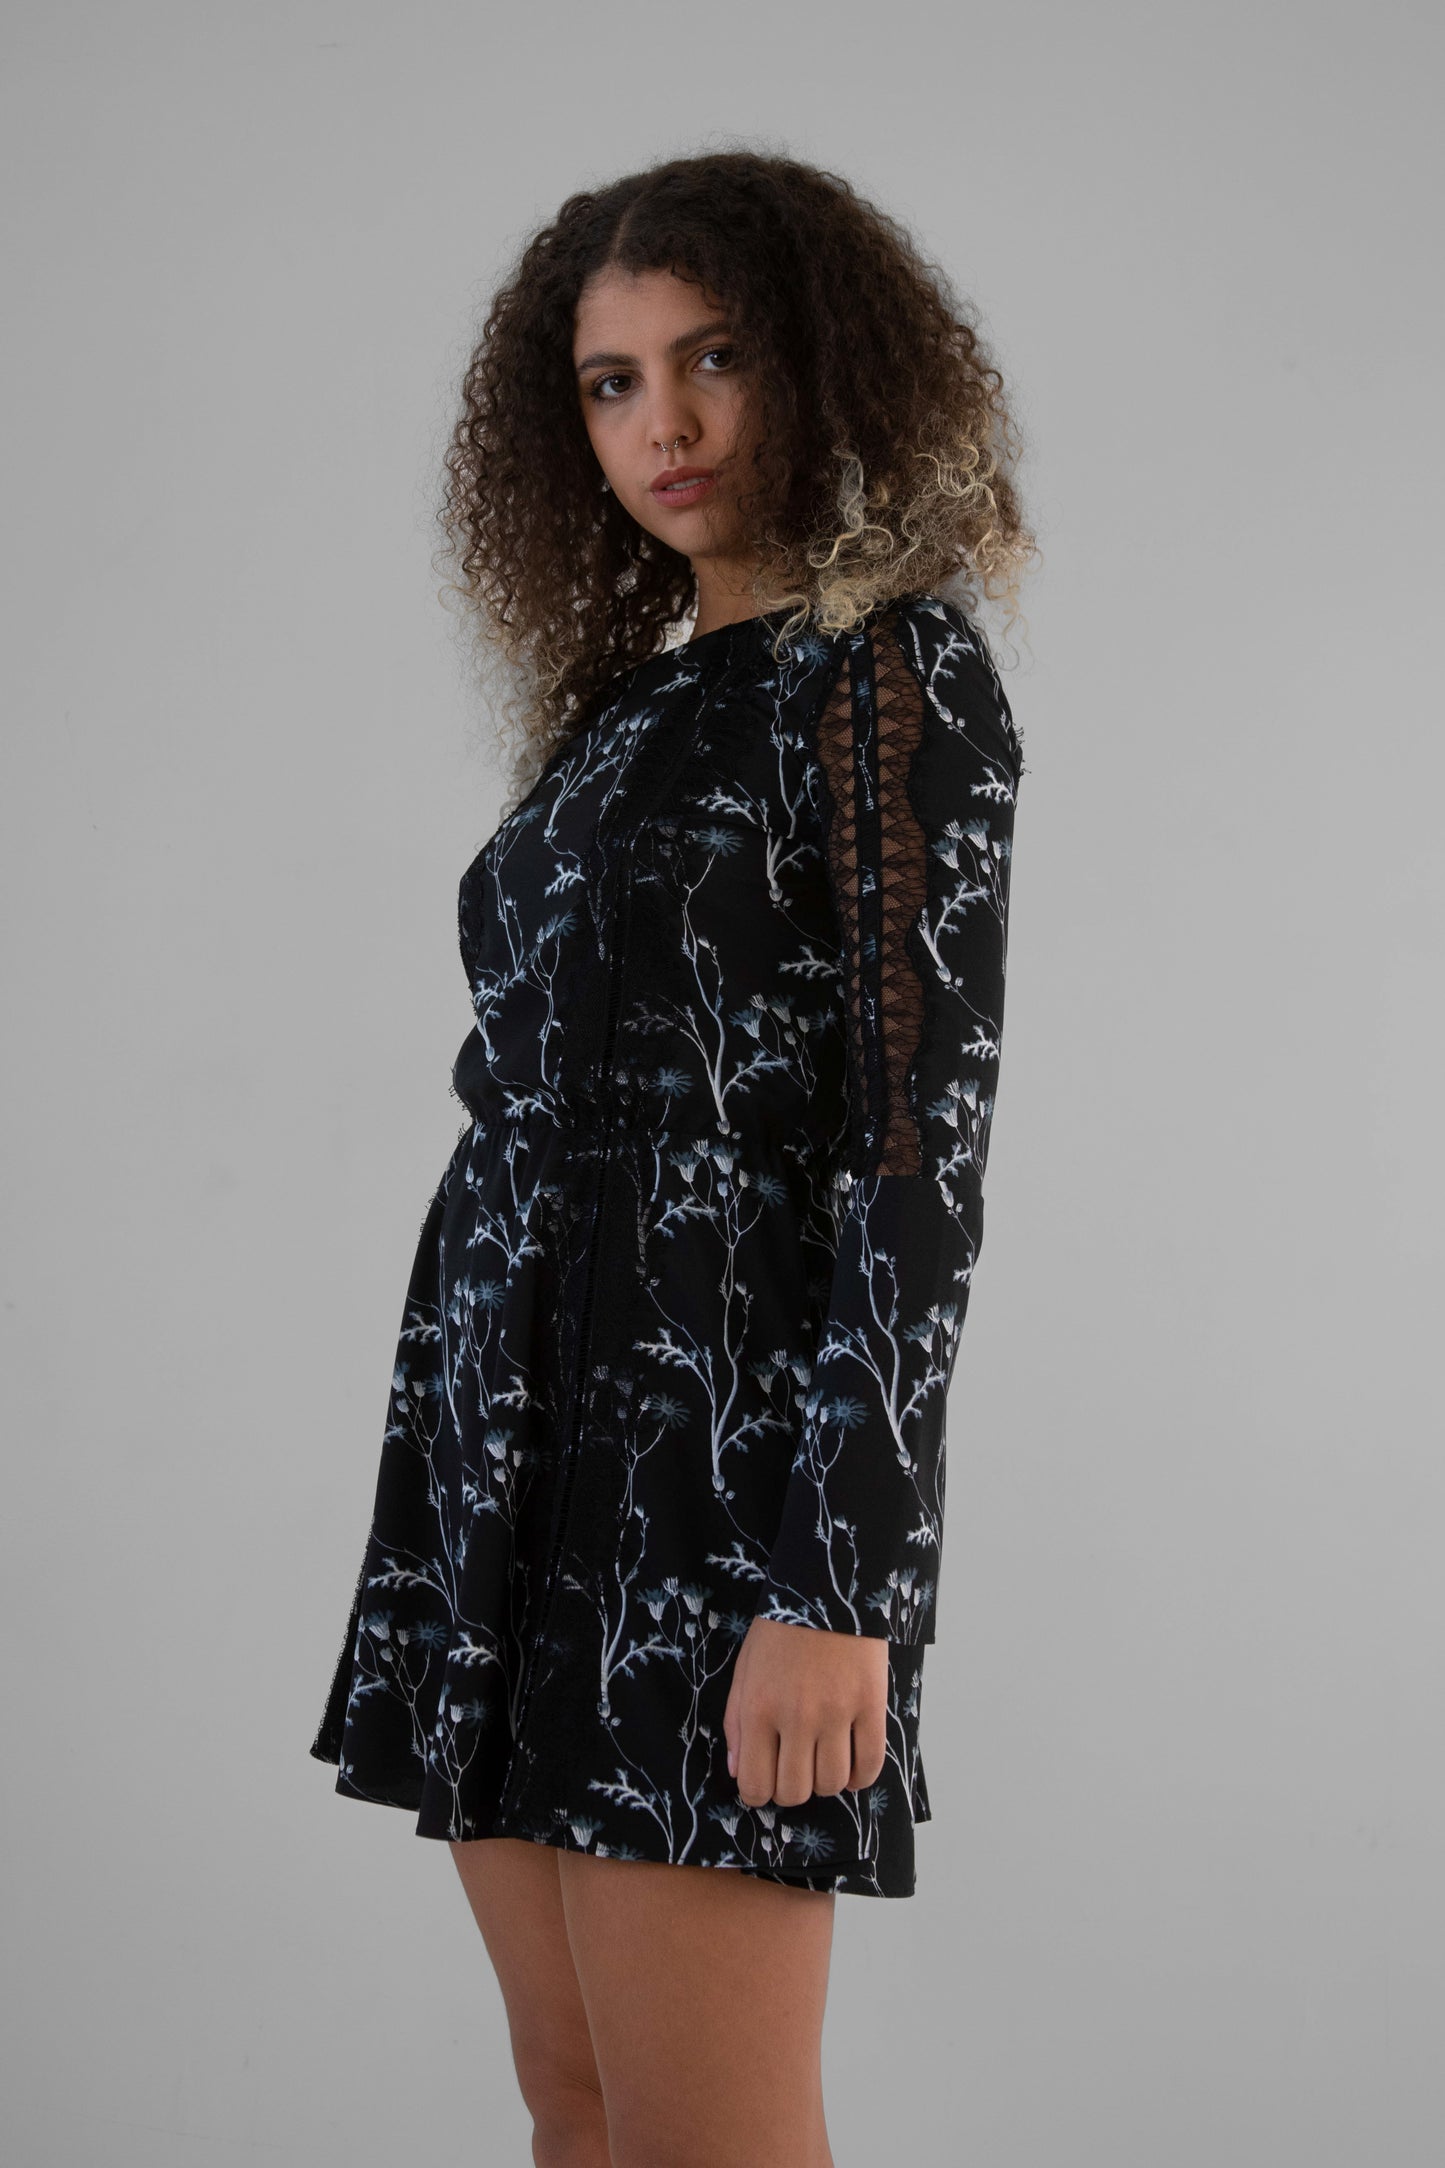 Thakoon Addition "Fall RTW" Mini Dress in Dark Floral - XS